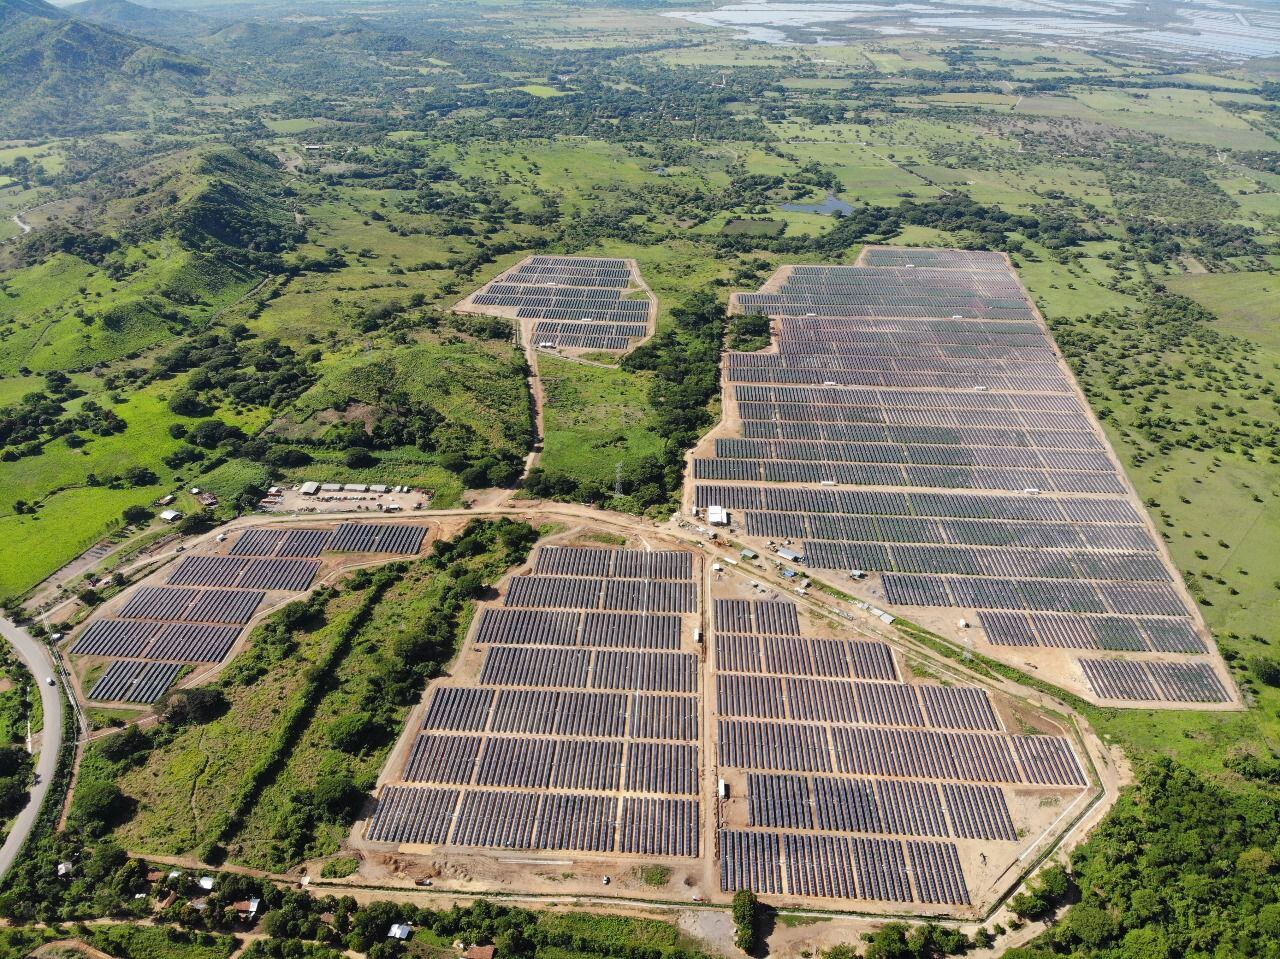 Vista aérea de la planta fotovoltaica instalada en el caserío de Costa Azul, en el municipio hondureño de Namasigüe.